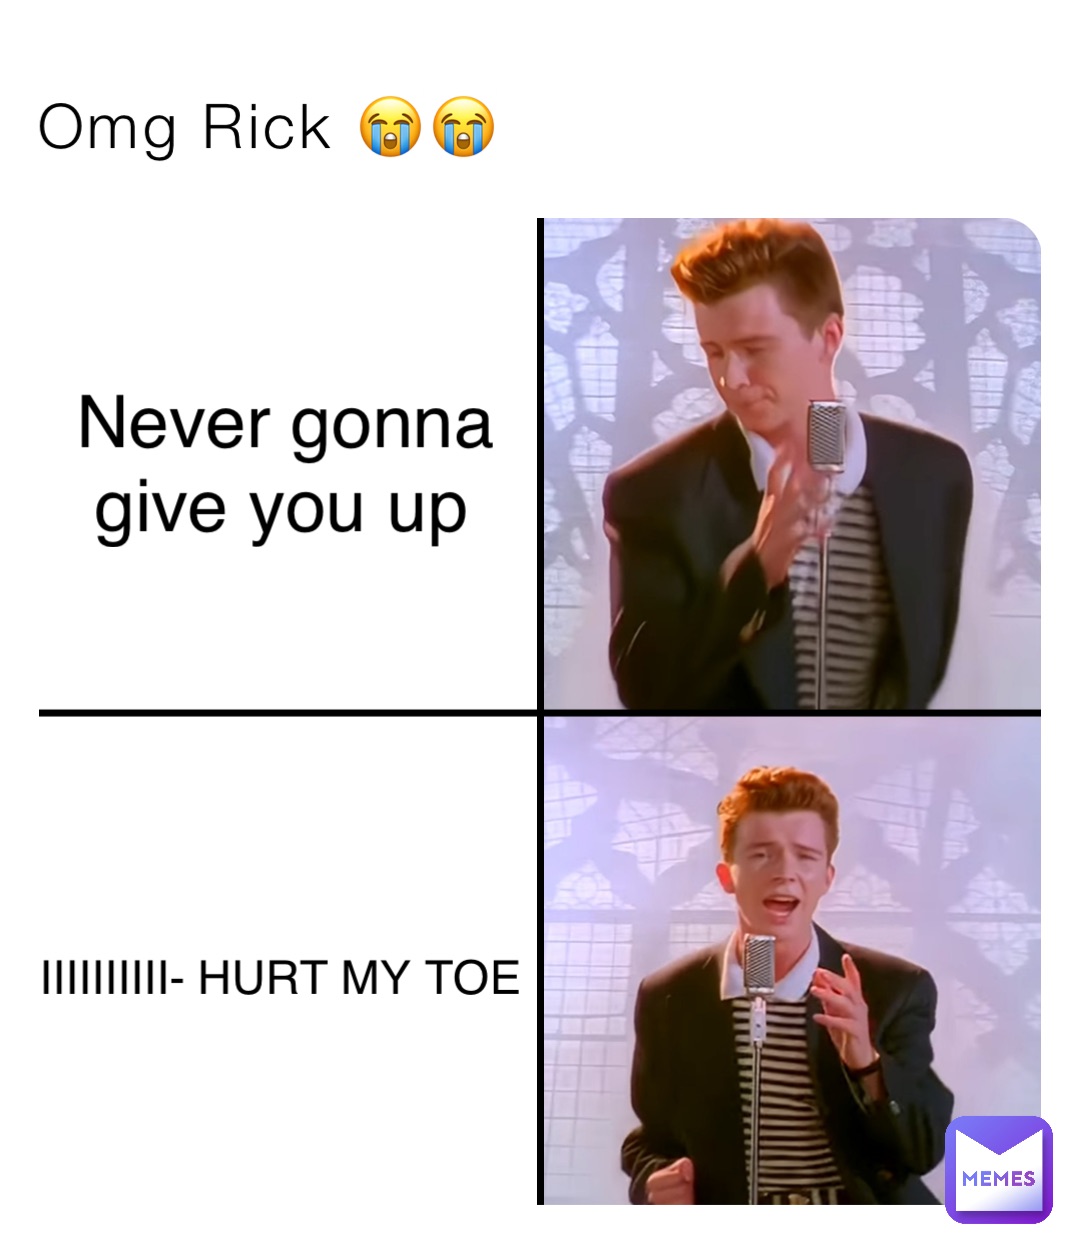 Omg Rick 😭😭 Never gonna give you up IIIIIIIIII- HURT MY TOE